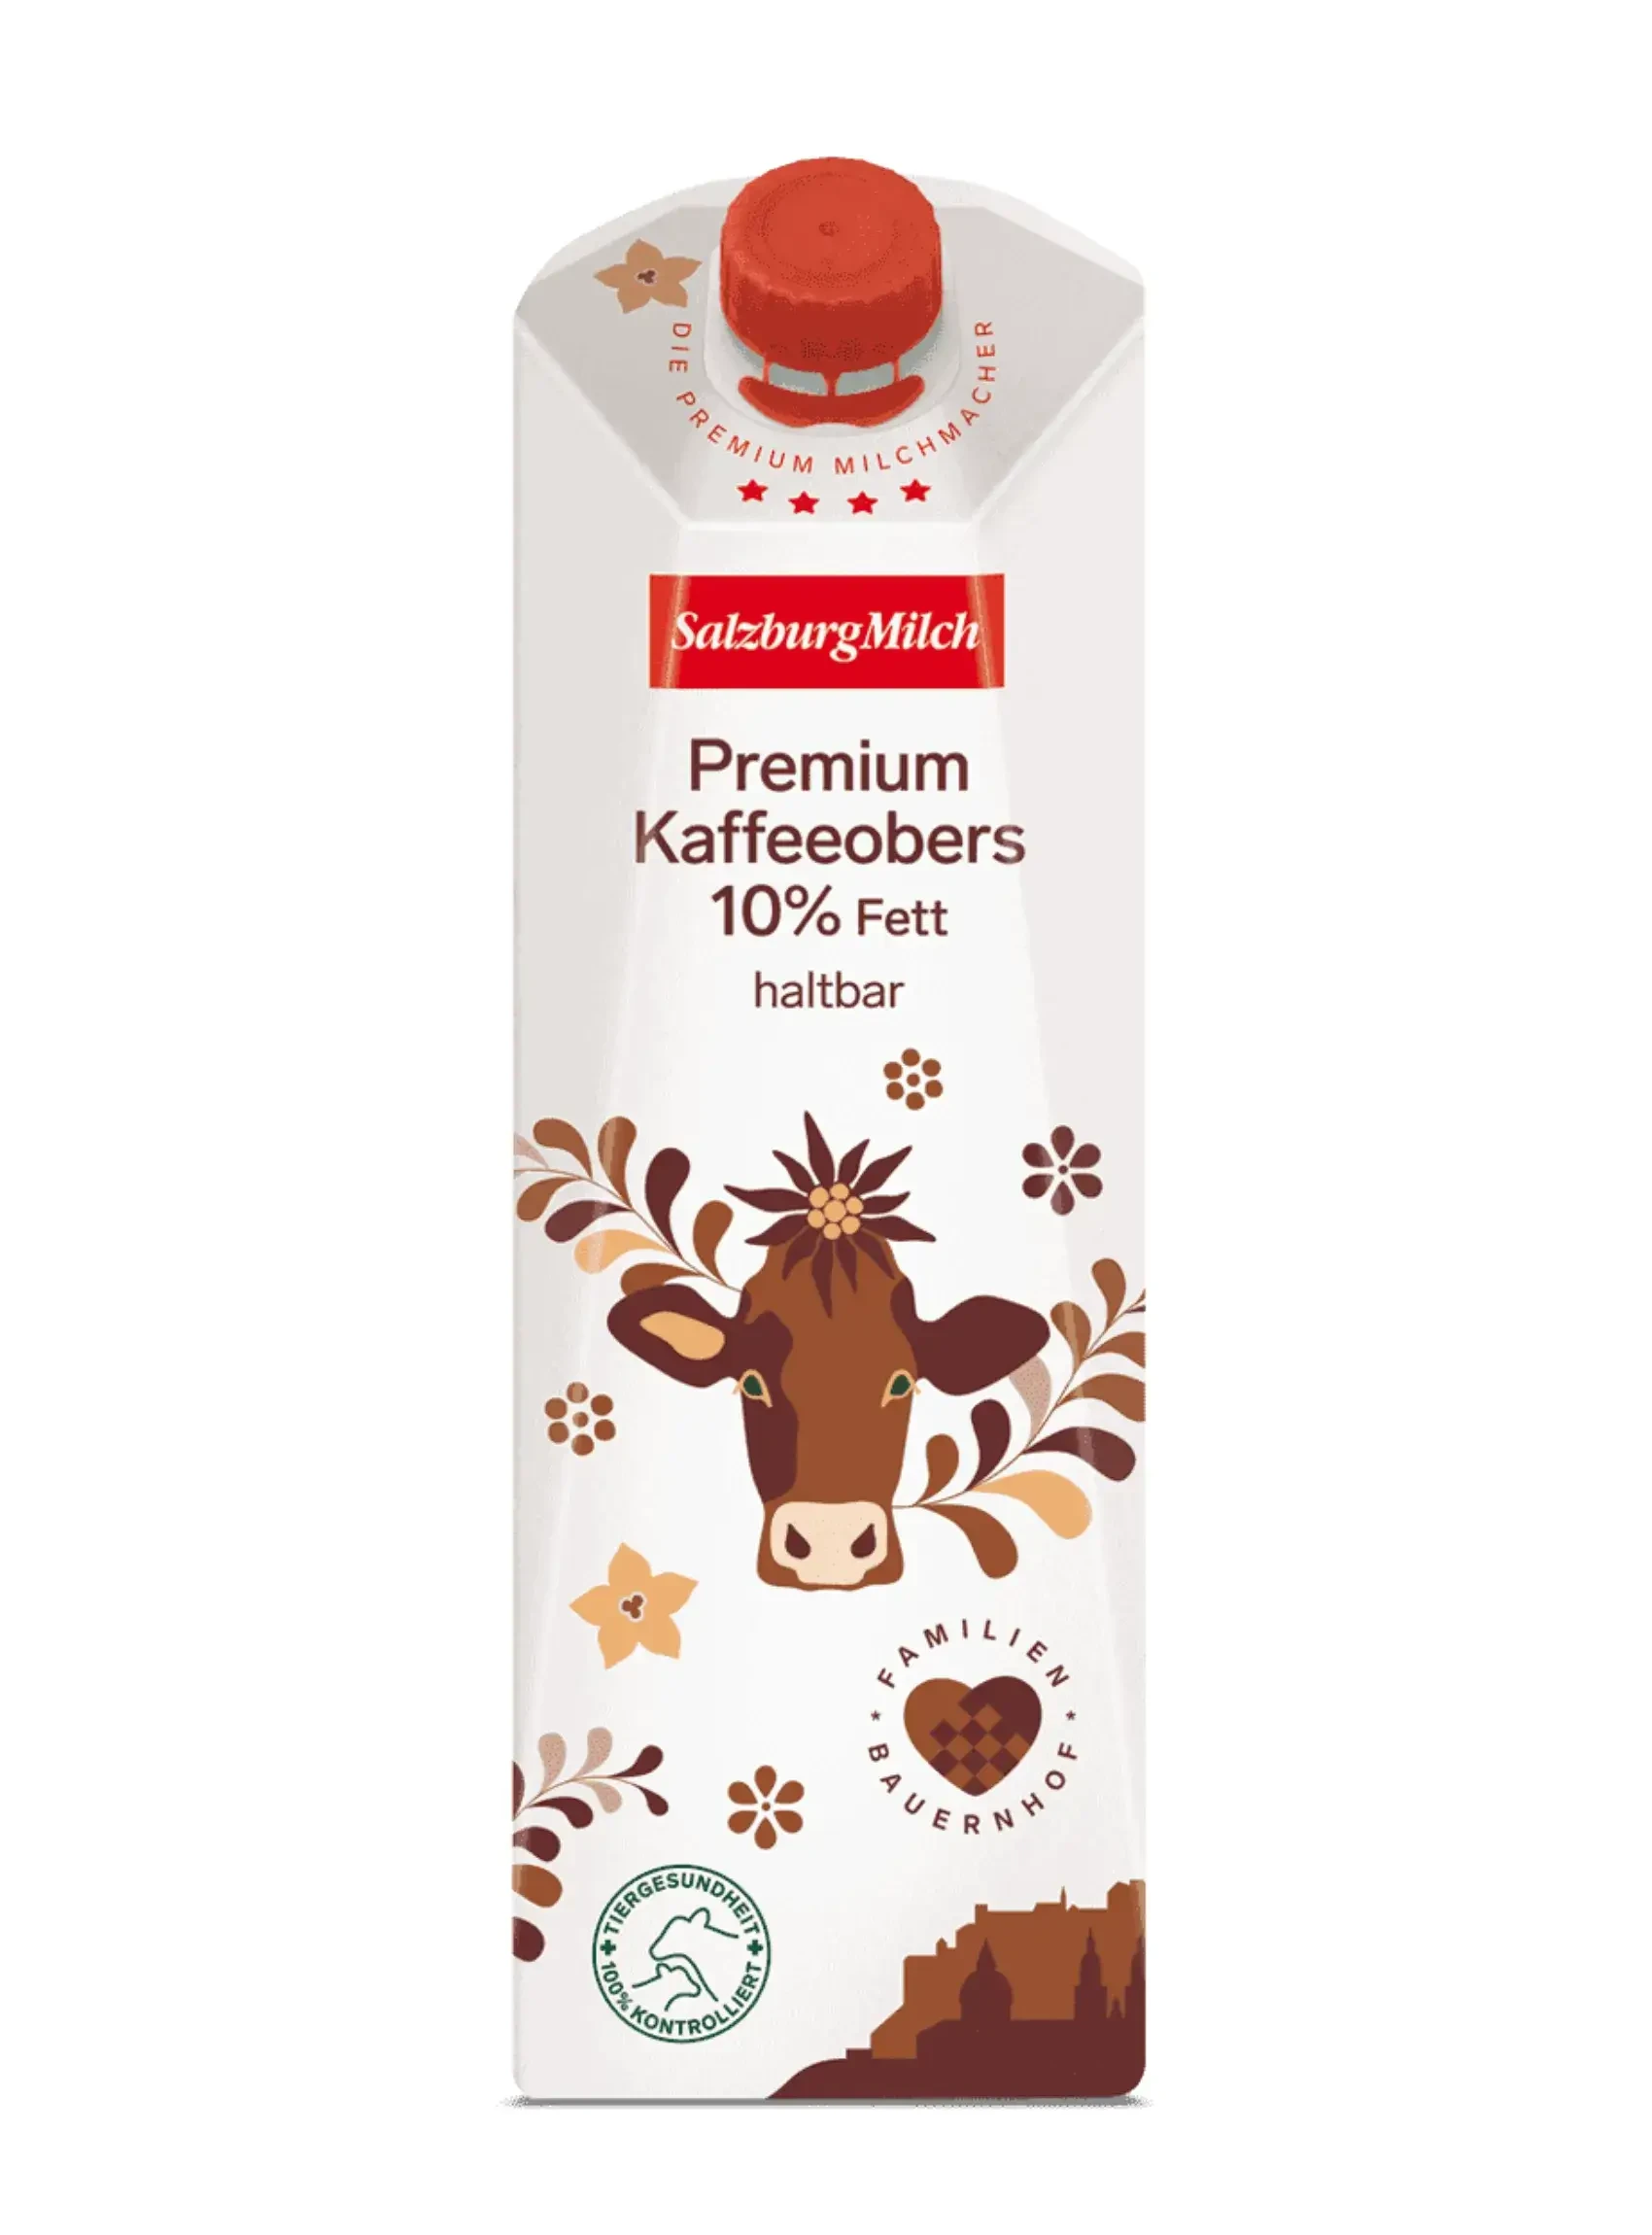 Premium H-Kaffeeobers von SalzburgMilch  in Salzburg